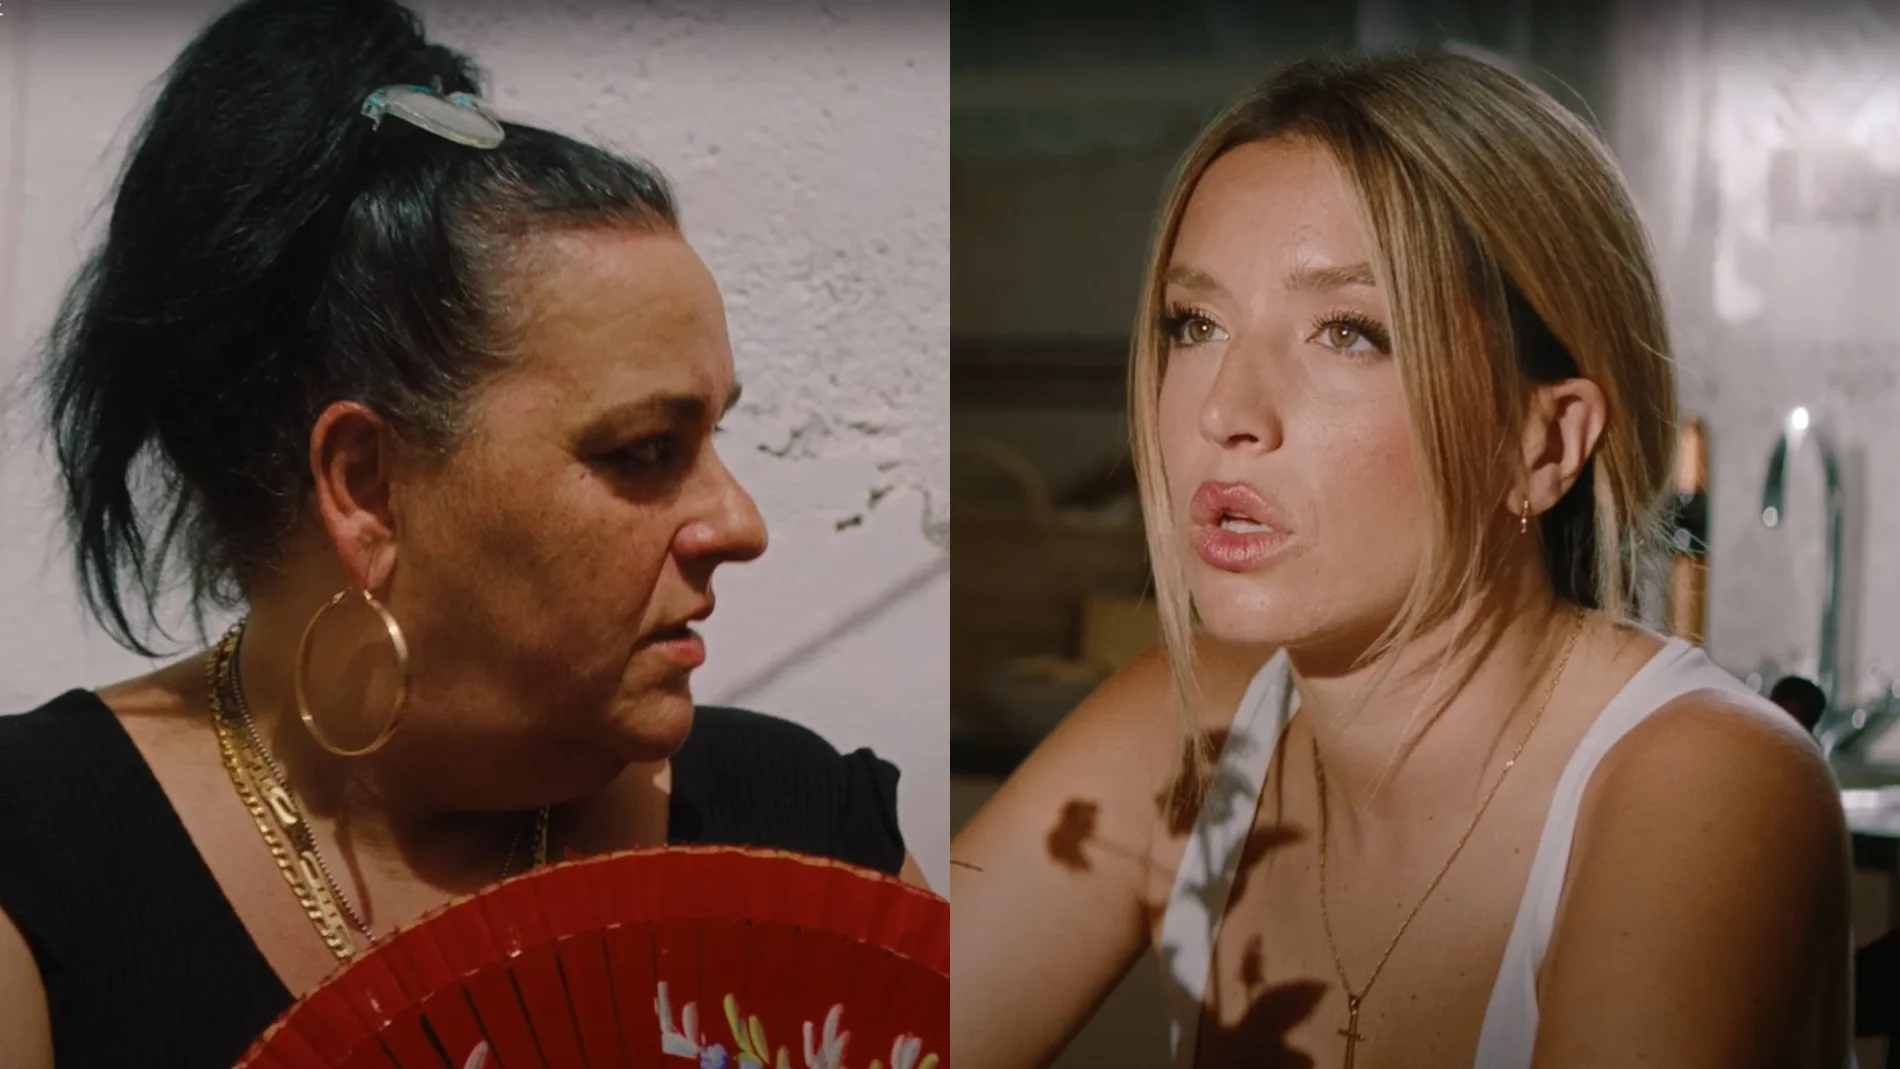 La Chata y Lola Índigo, en el videoclip de 'Mala suerte'.